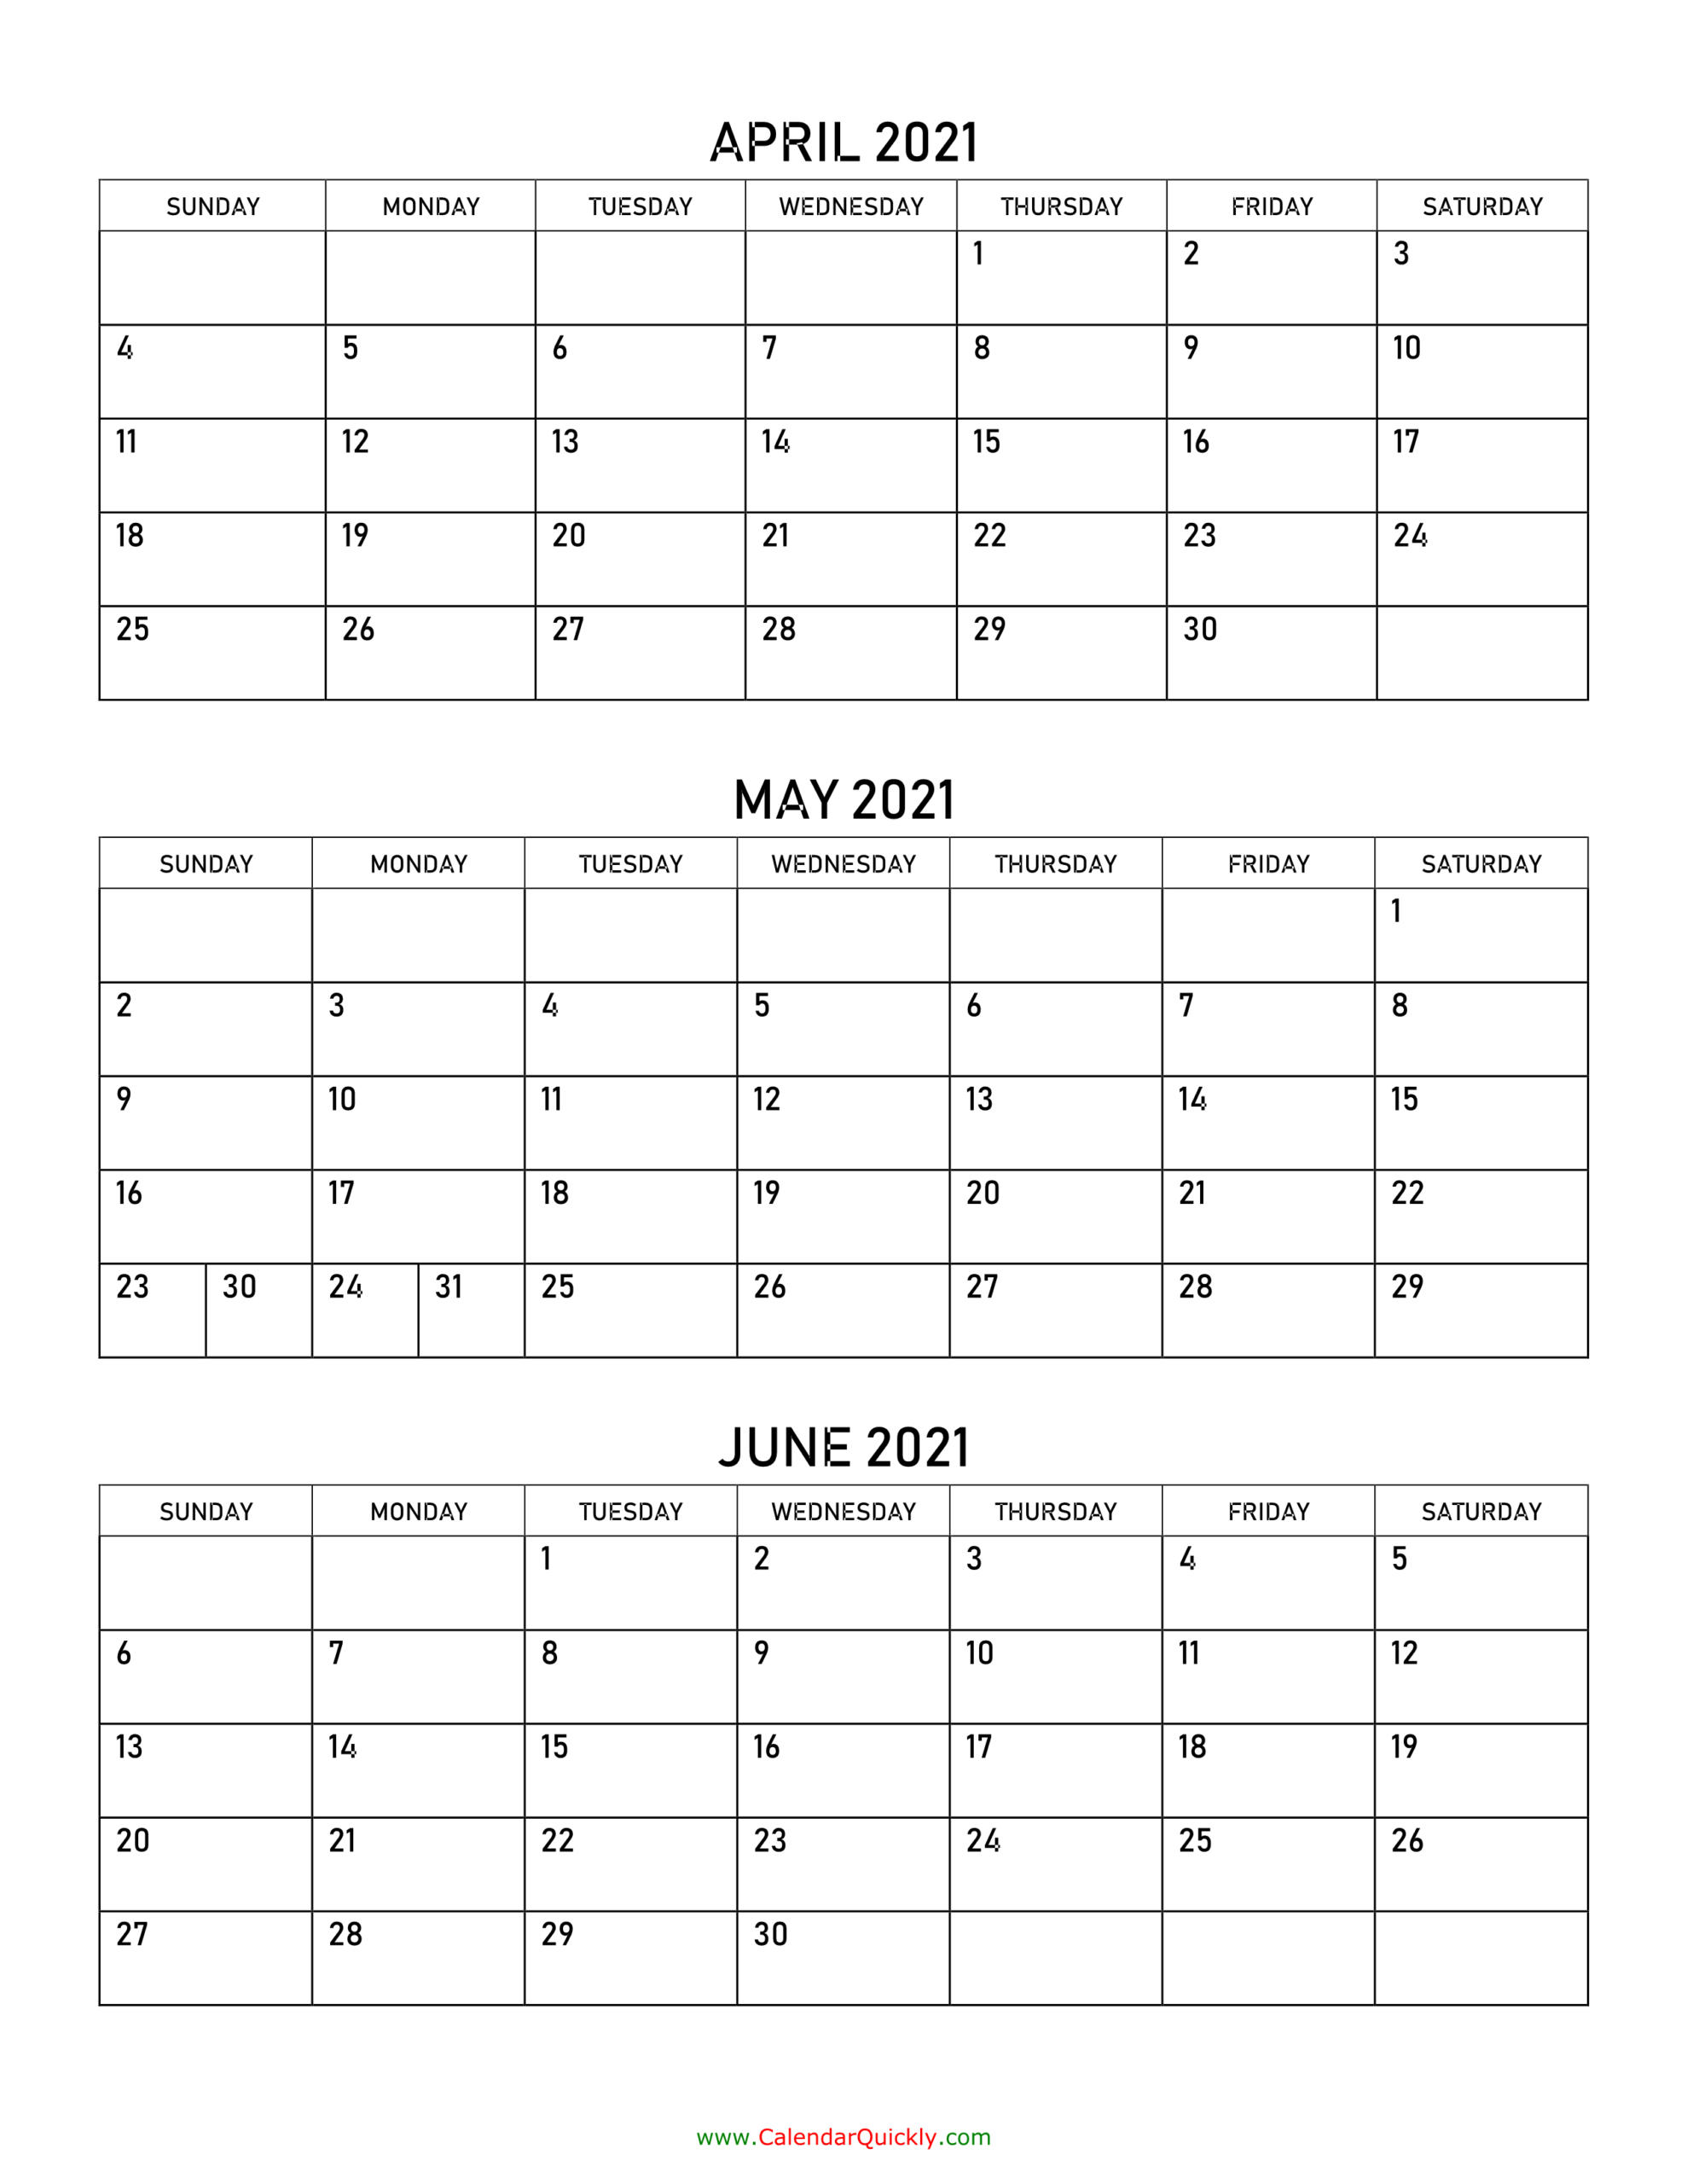 April To June 2021 Calendar | Calendar Quickly-3 Month Calendar June-August 2021